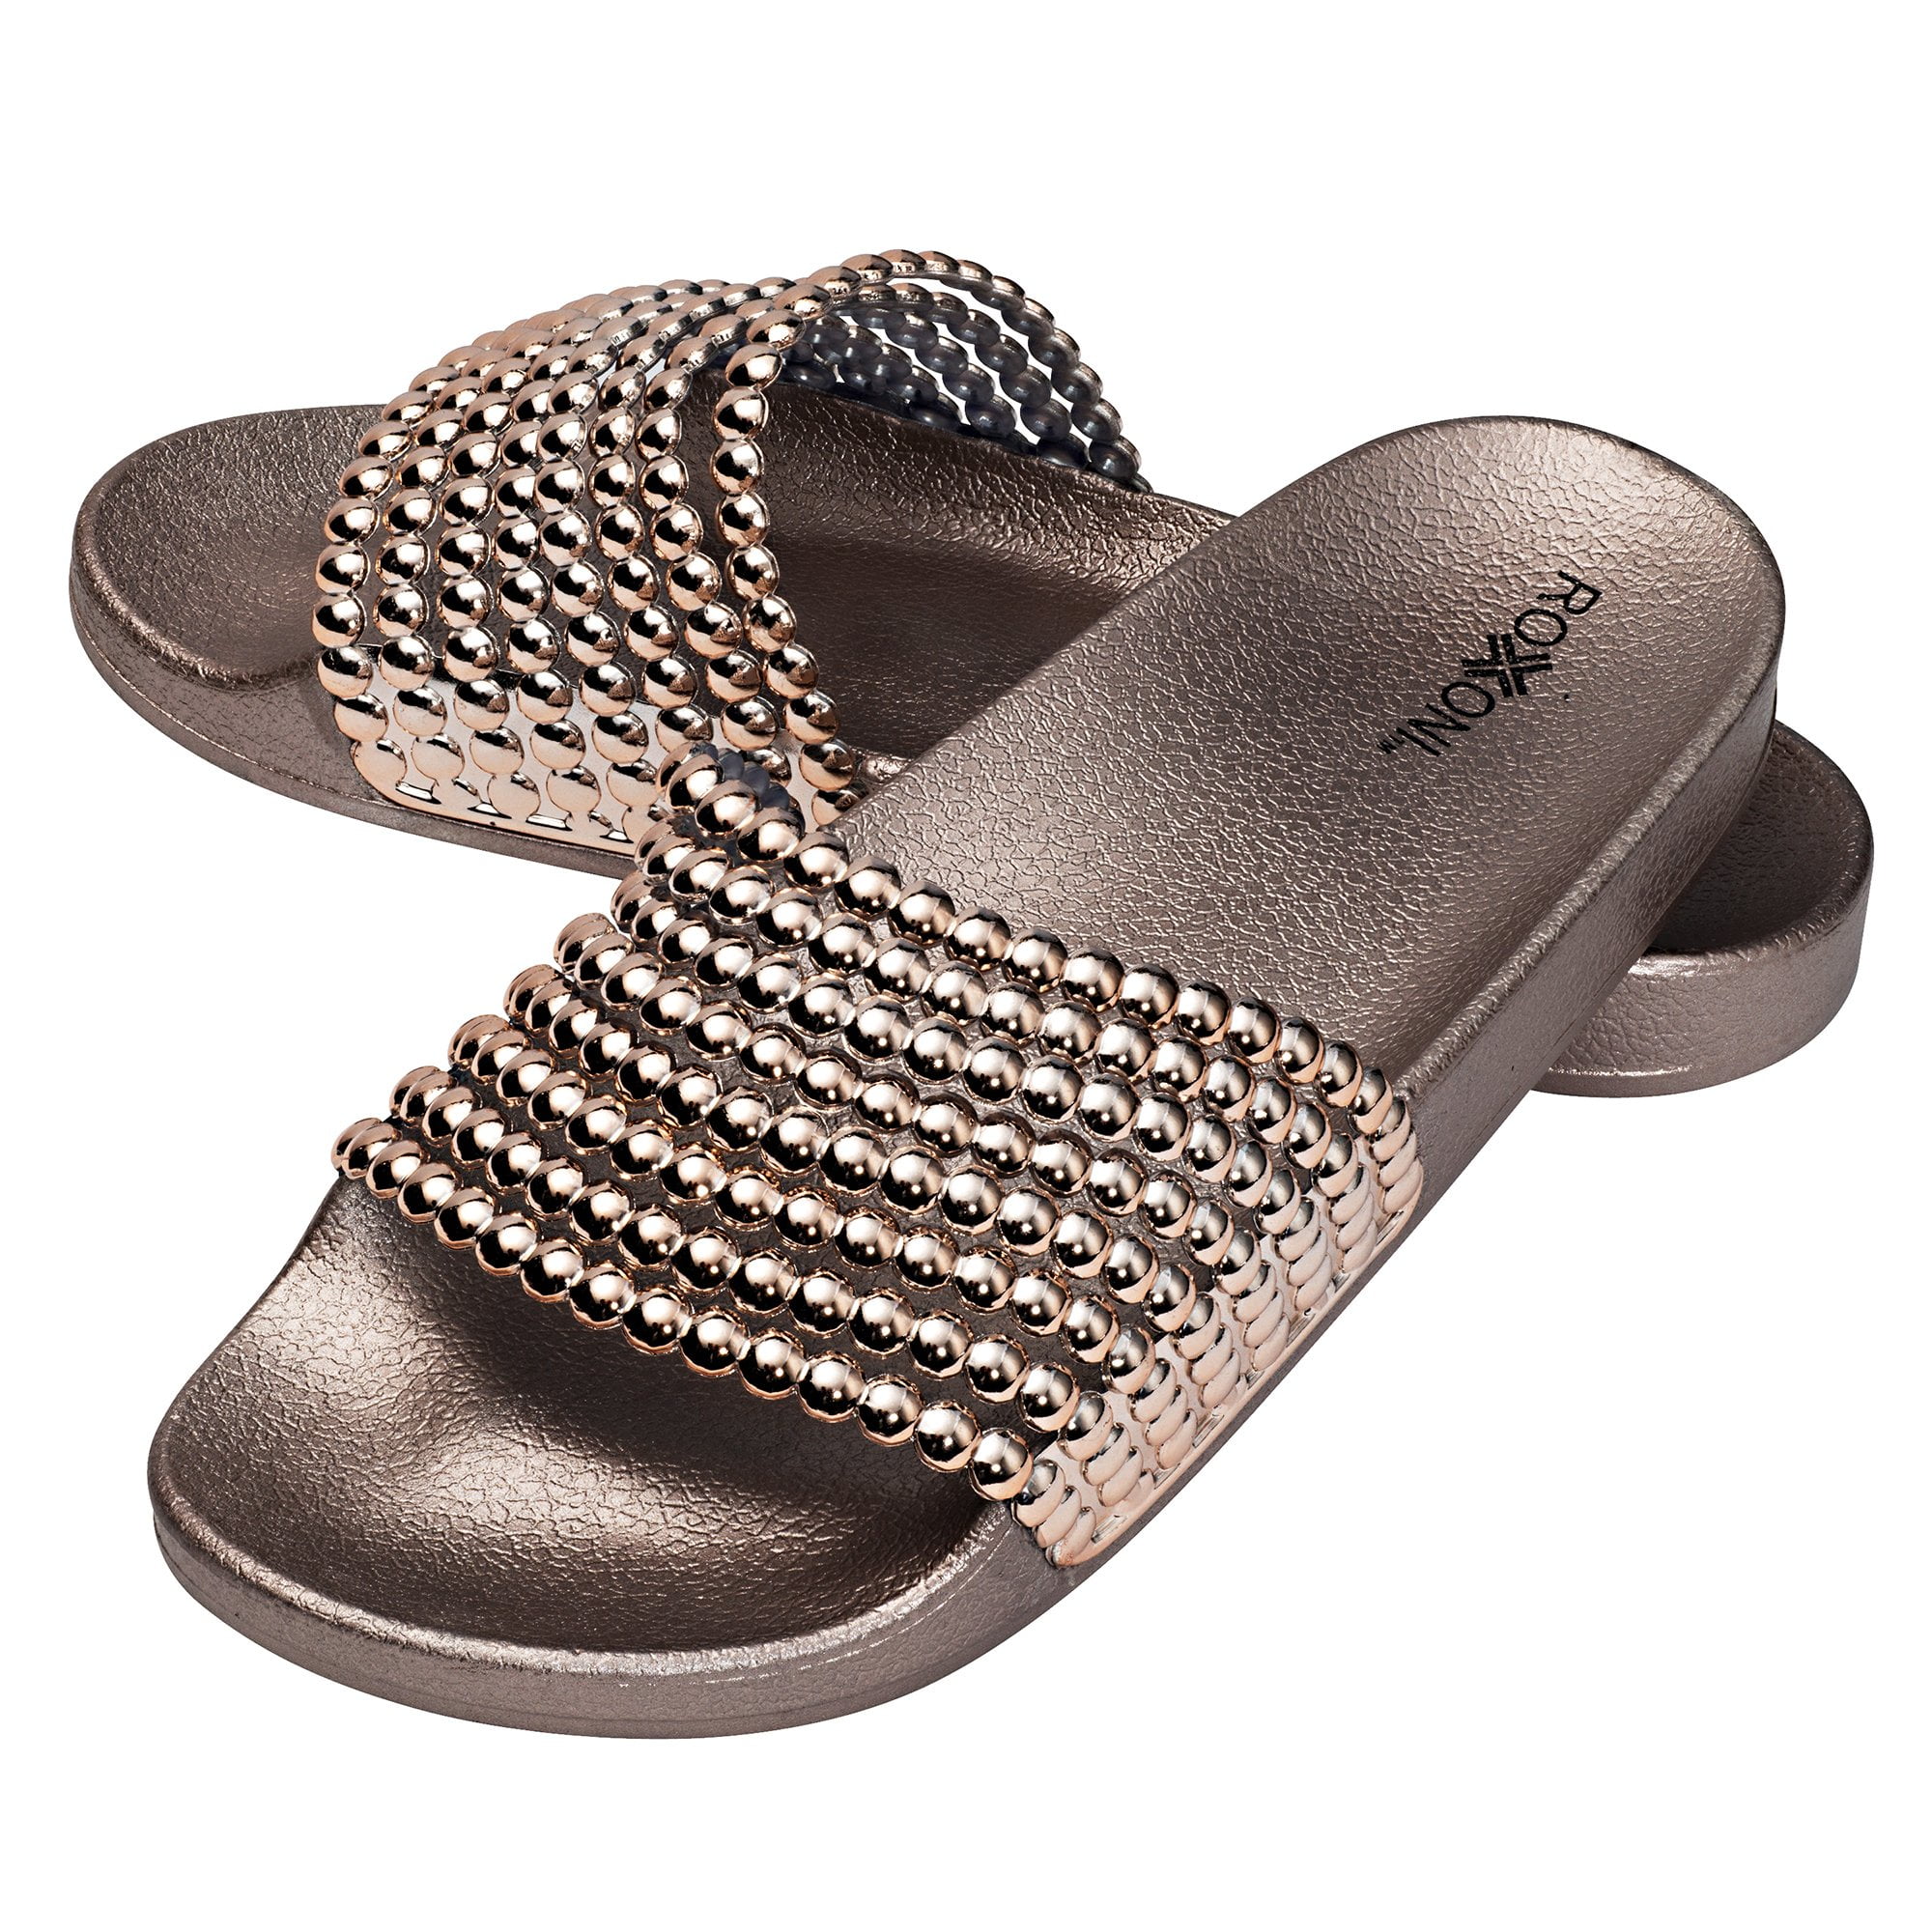 H2K Slide Sandals for Women Summer Comfy Genuine Leather Footbed Slide Sandals Slip-On Flat Adjustable Buckled Straps-Pewter Silver 